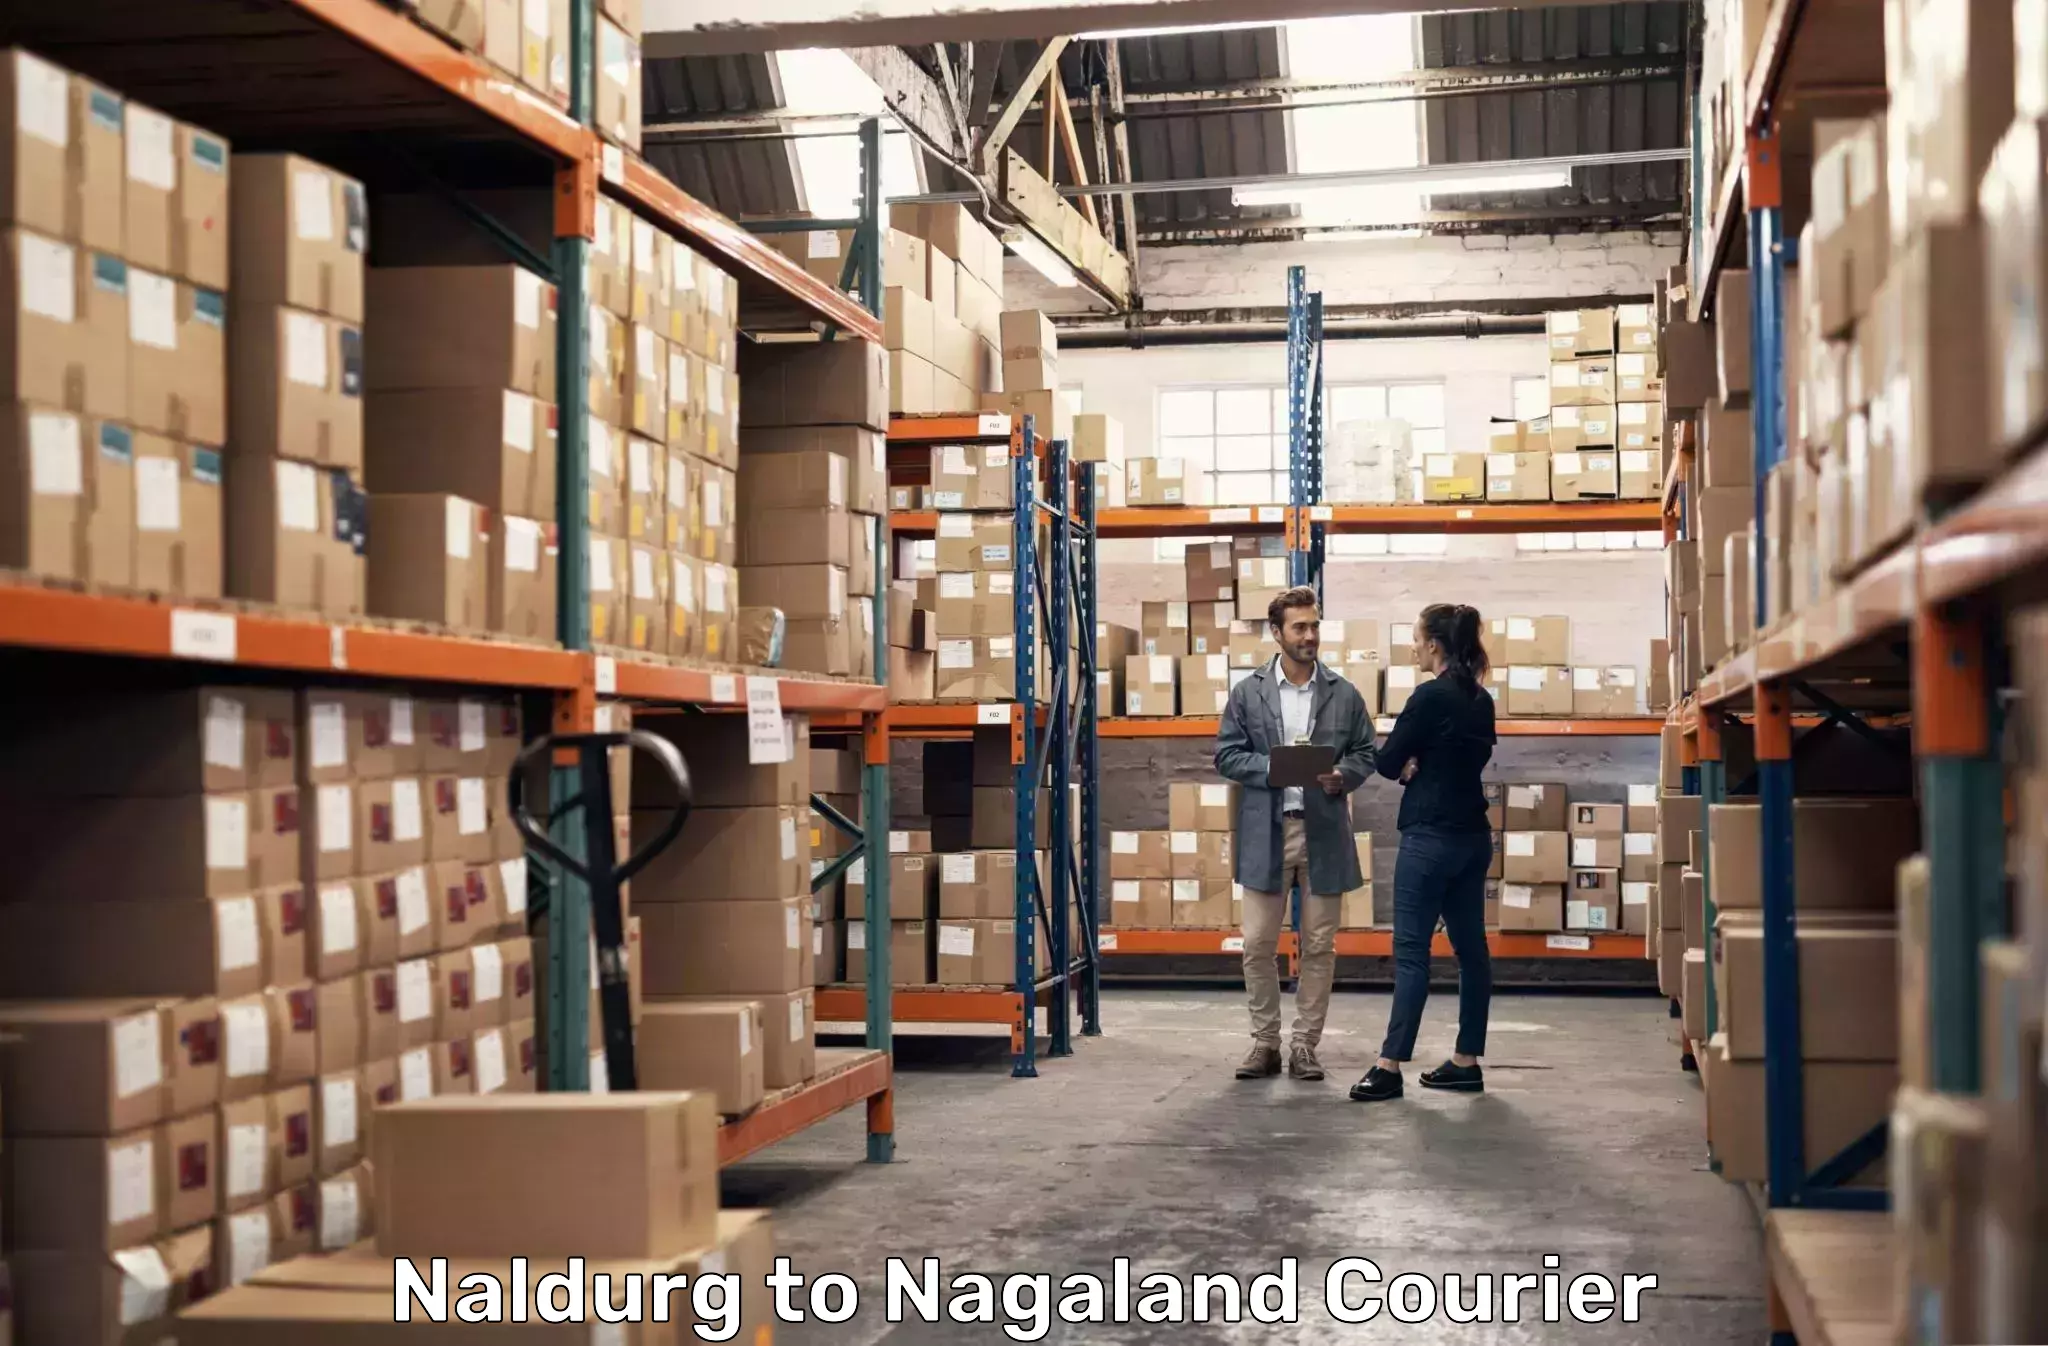 Urgent courier needs Naldurg to Longleng